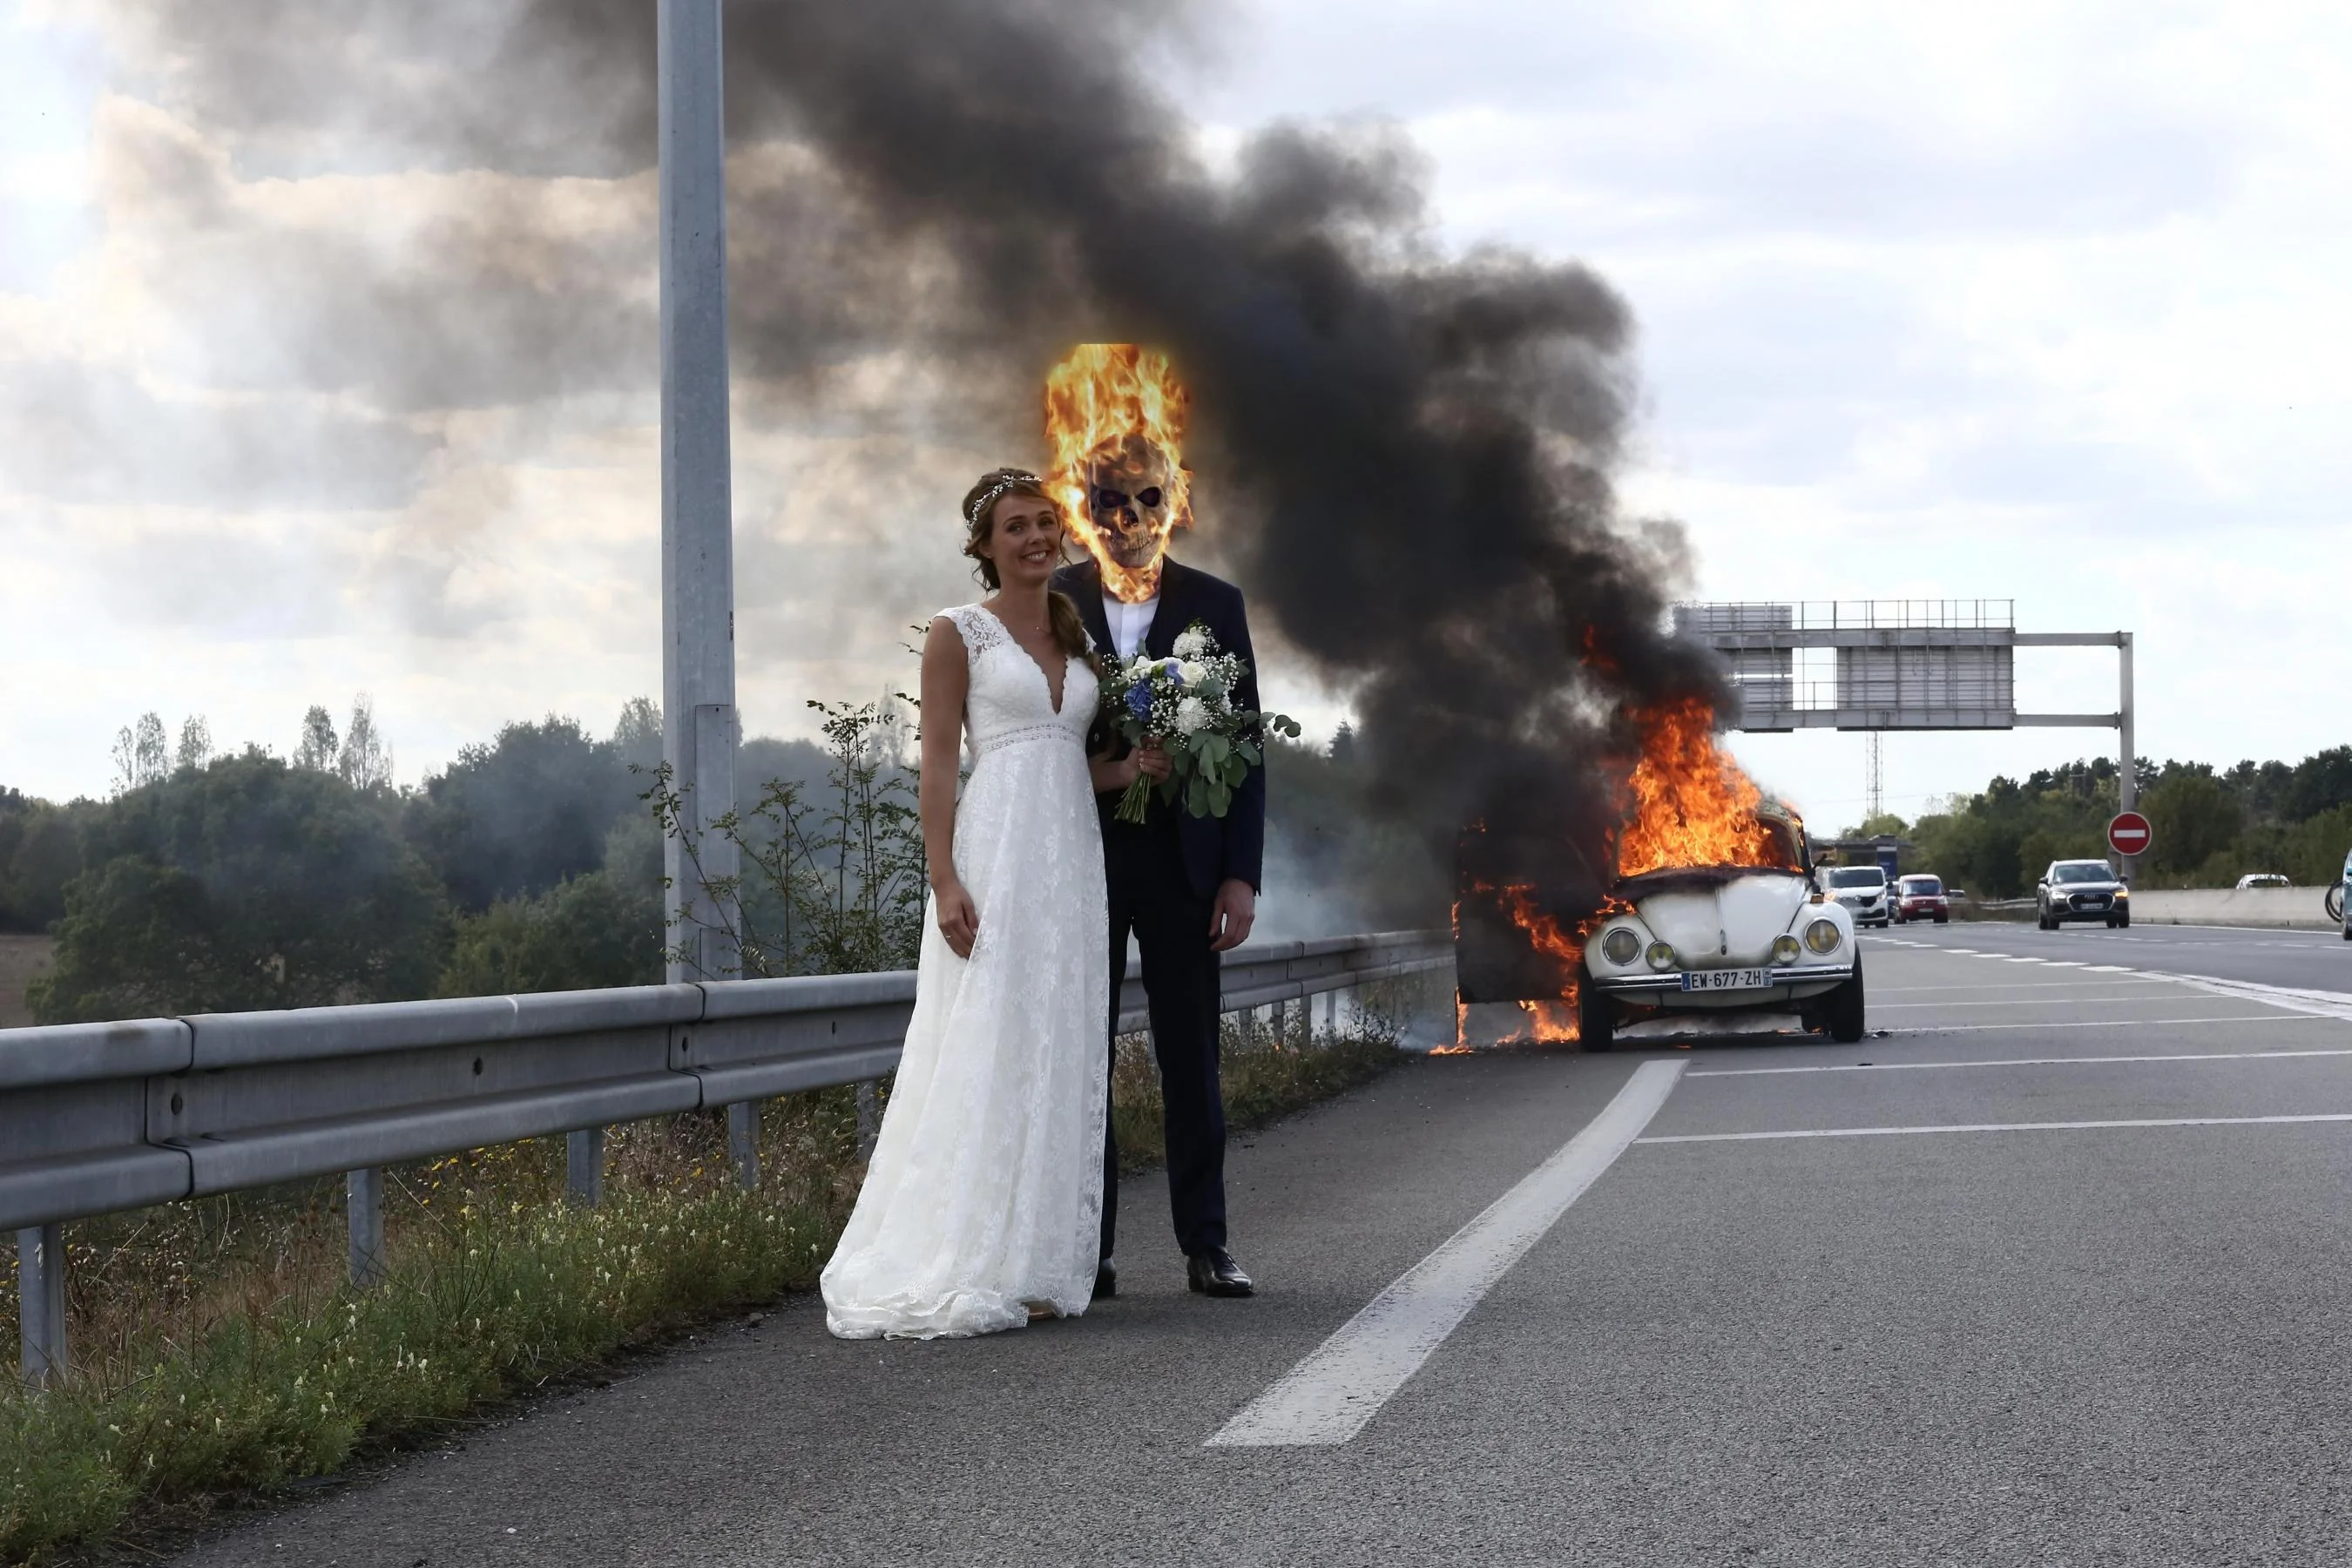 Молодята зробили весільне фото на фоні палаючого авто і стали жертвами фотошопу - фото 452772